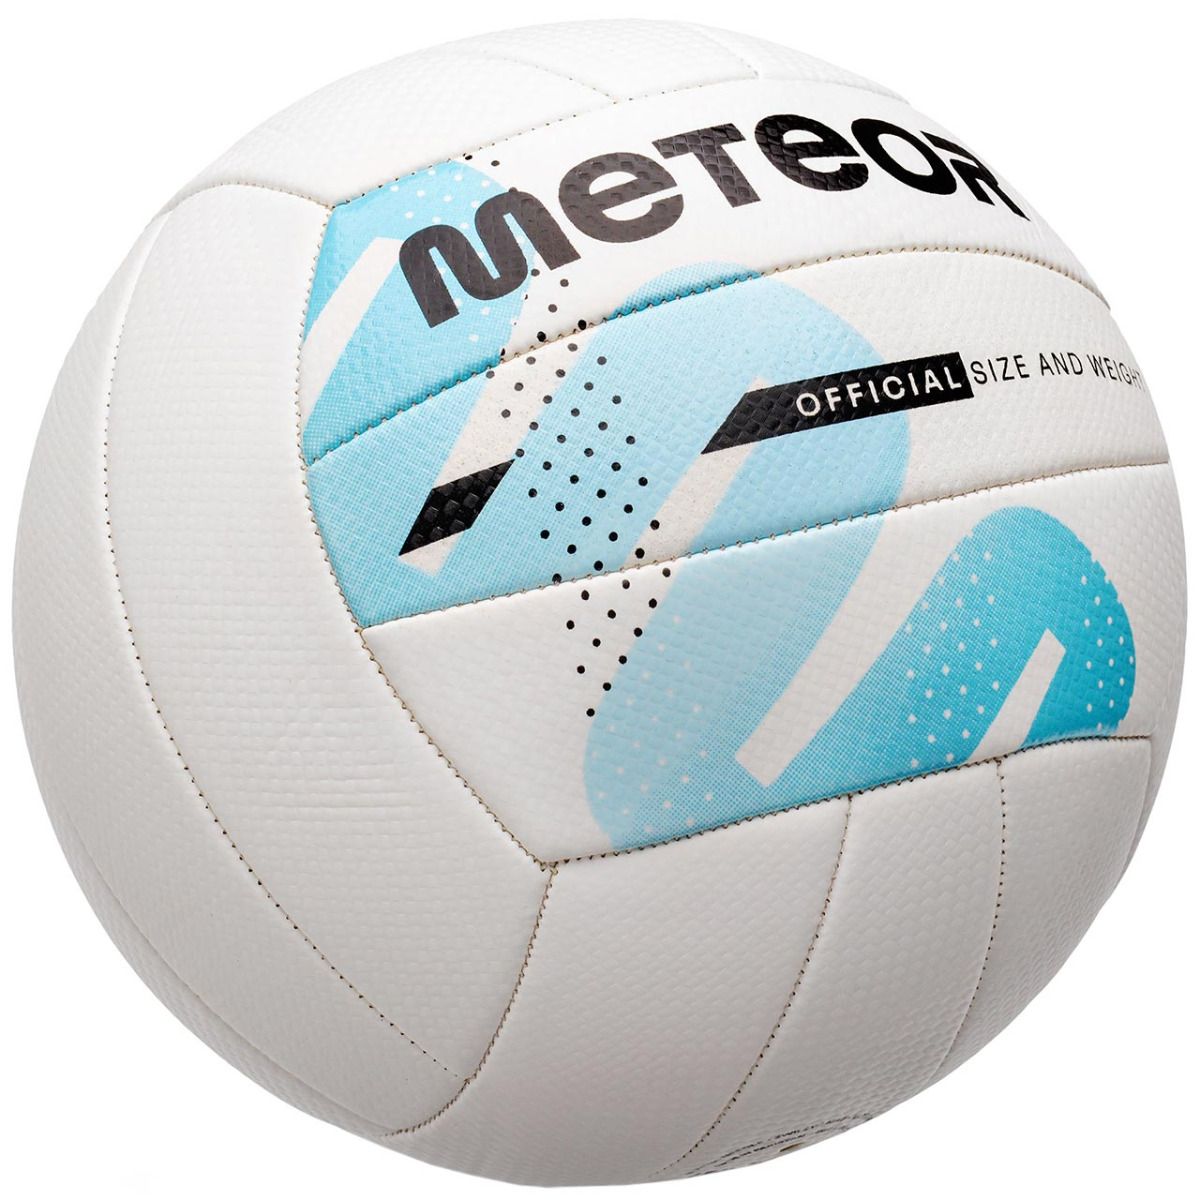 Meteor Volejbalový míč 16453